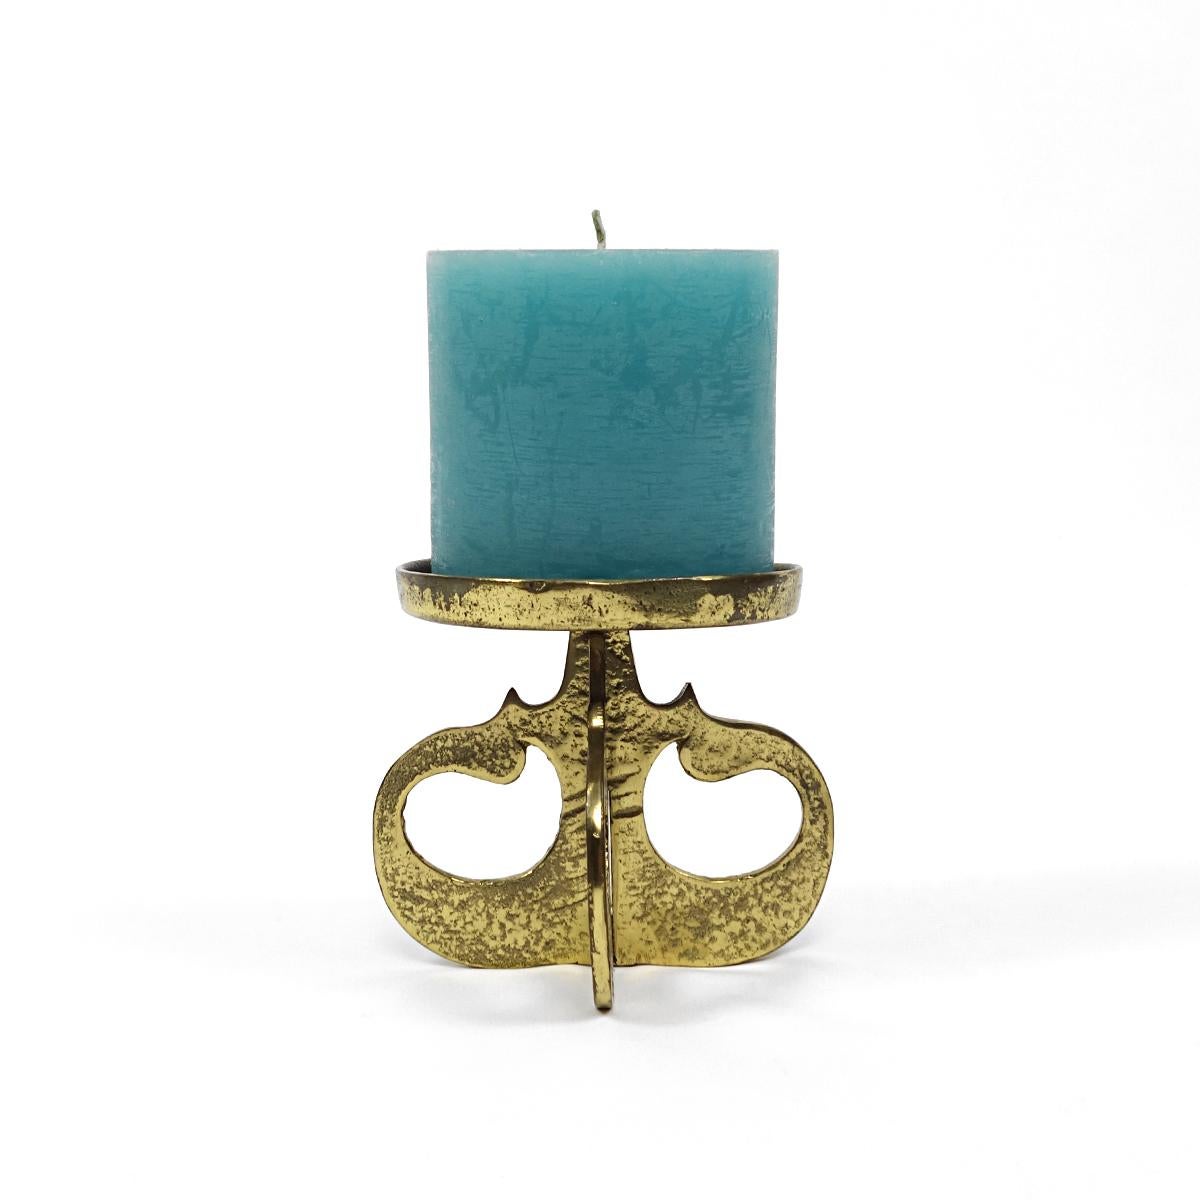 Schwerer schwarzer Kupfer-Kerzenhalter für eine mittelstarke Kerze.

Dieser wunderbare Mid-Century Modern-Artikel hat einen durchbrochenen brutalistischen Fuß, der aus 4 übereinander gestapelten Silhouetten von gehämmerten Monden besteht.